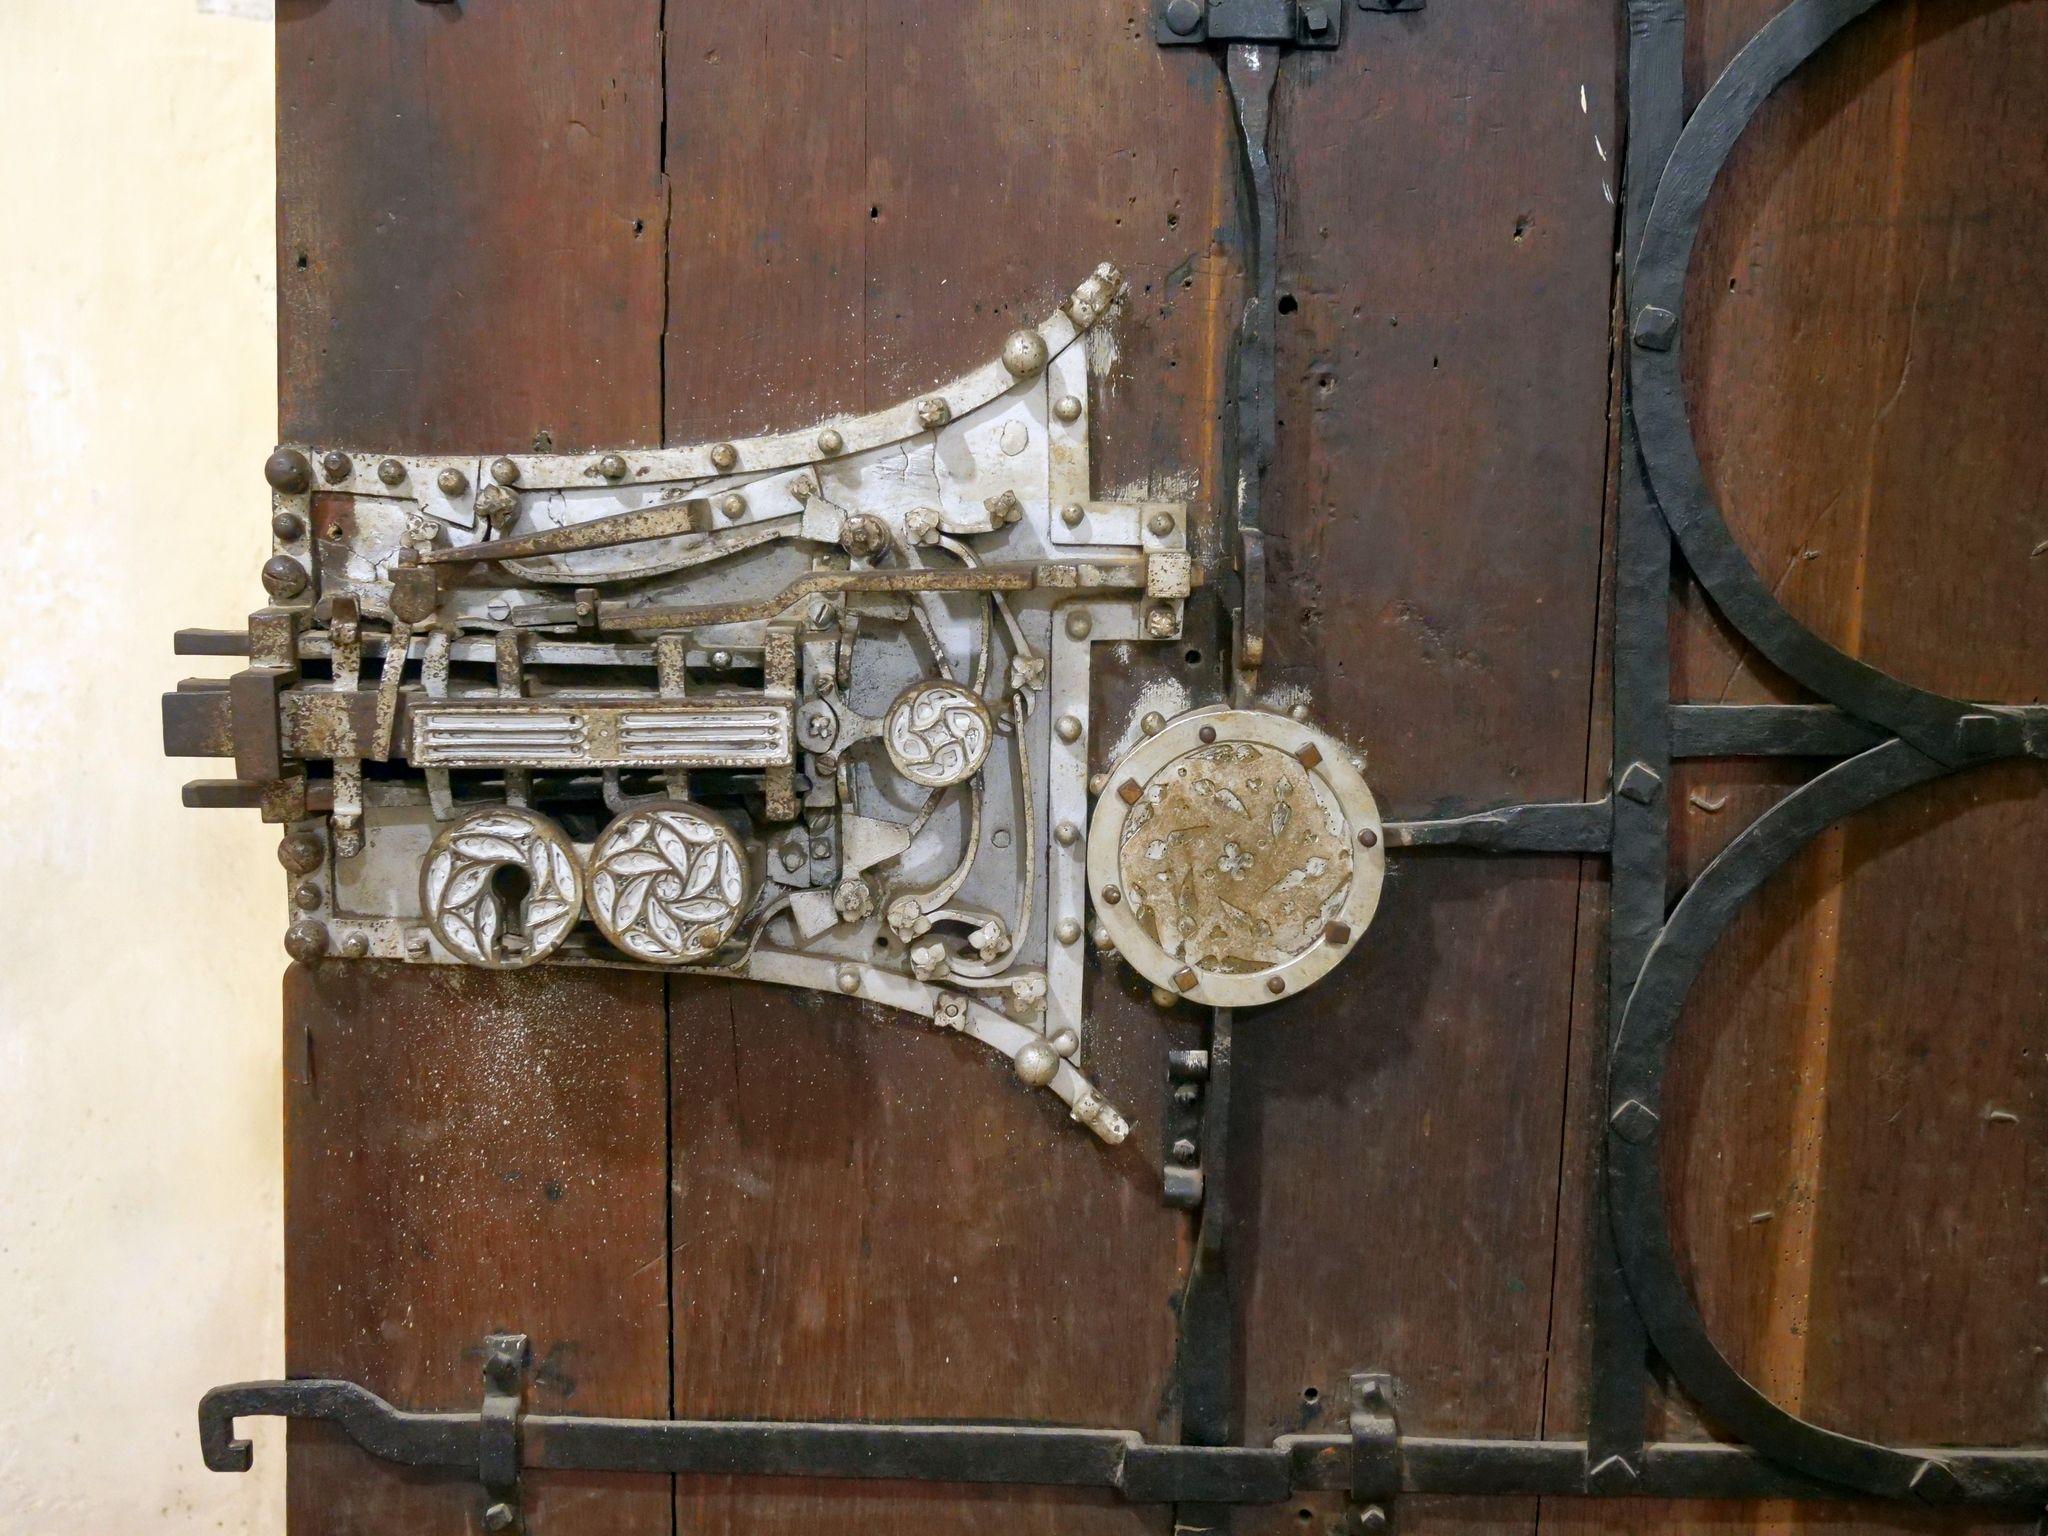 Zăvorul cu 19 mecanisme de închidere de pe portalul sacristiei Bisericii din Biertan. Creat în 1515 de către meșterul sighișorean Johannes Reychmuth, acest mecanism ingenios a fost prezentat cu tot cu poarta de stejar la Expoziția Mondială din Paris în 1889.